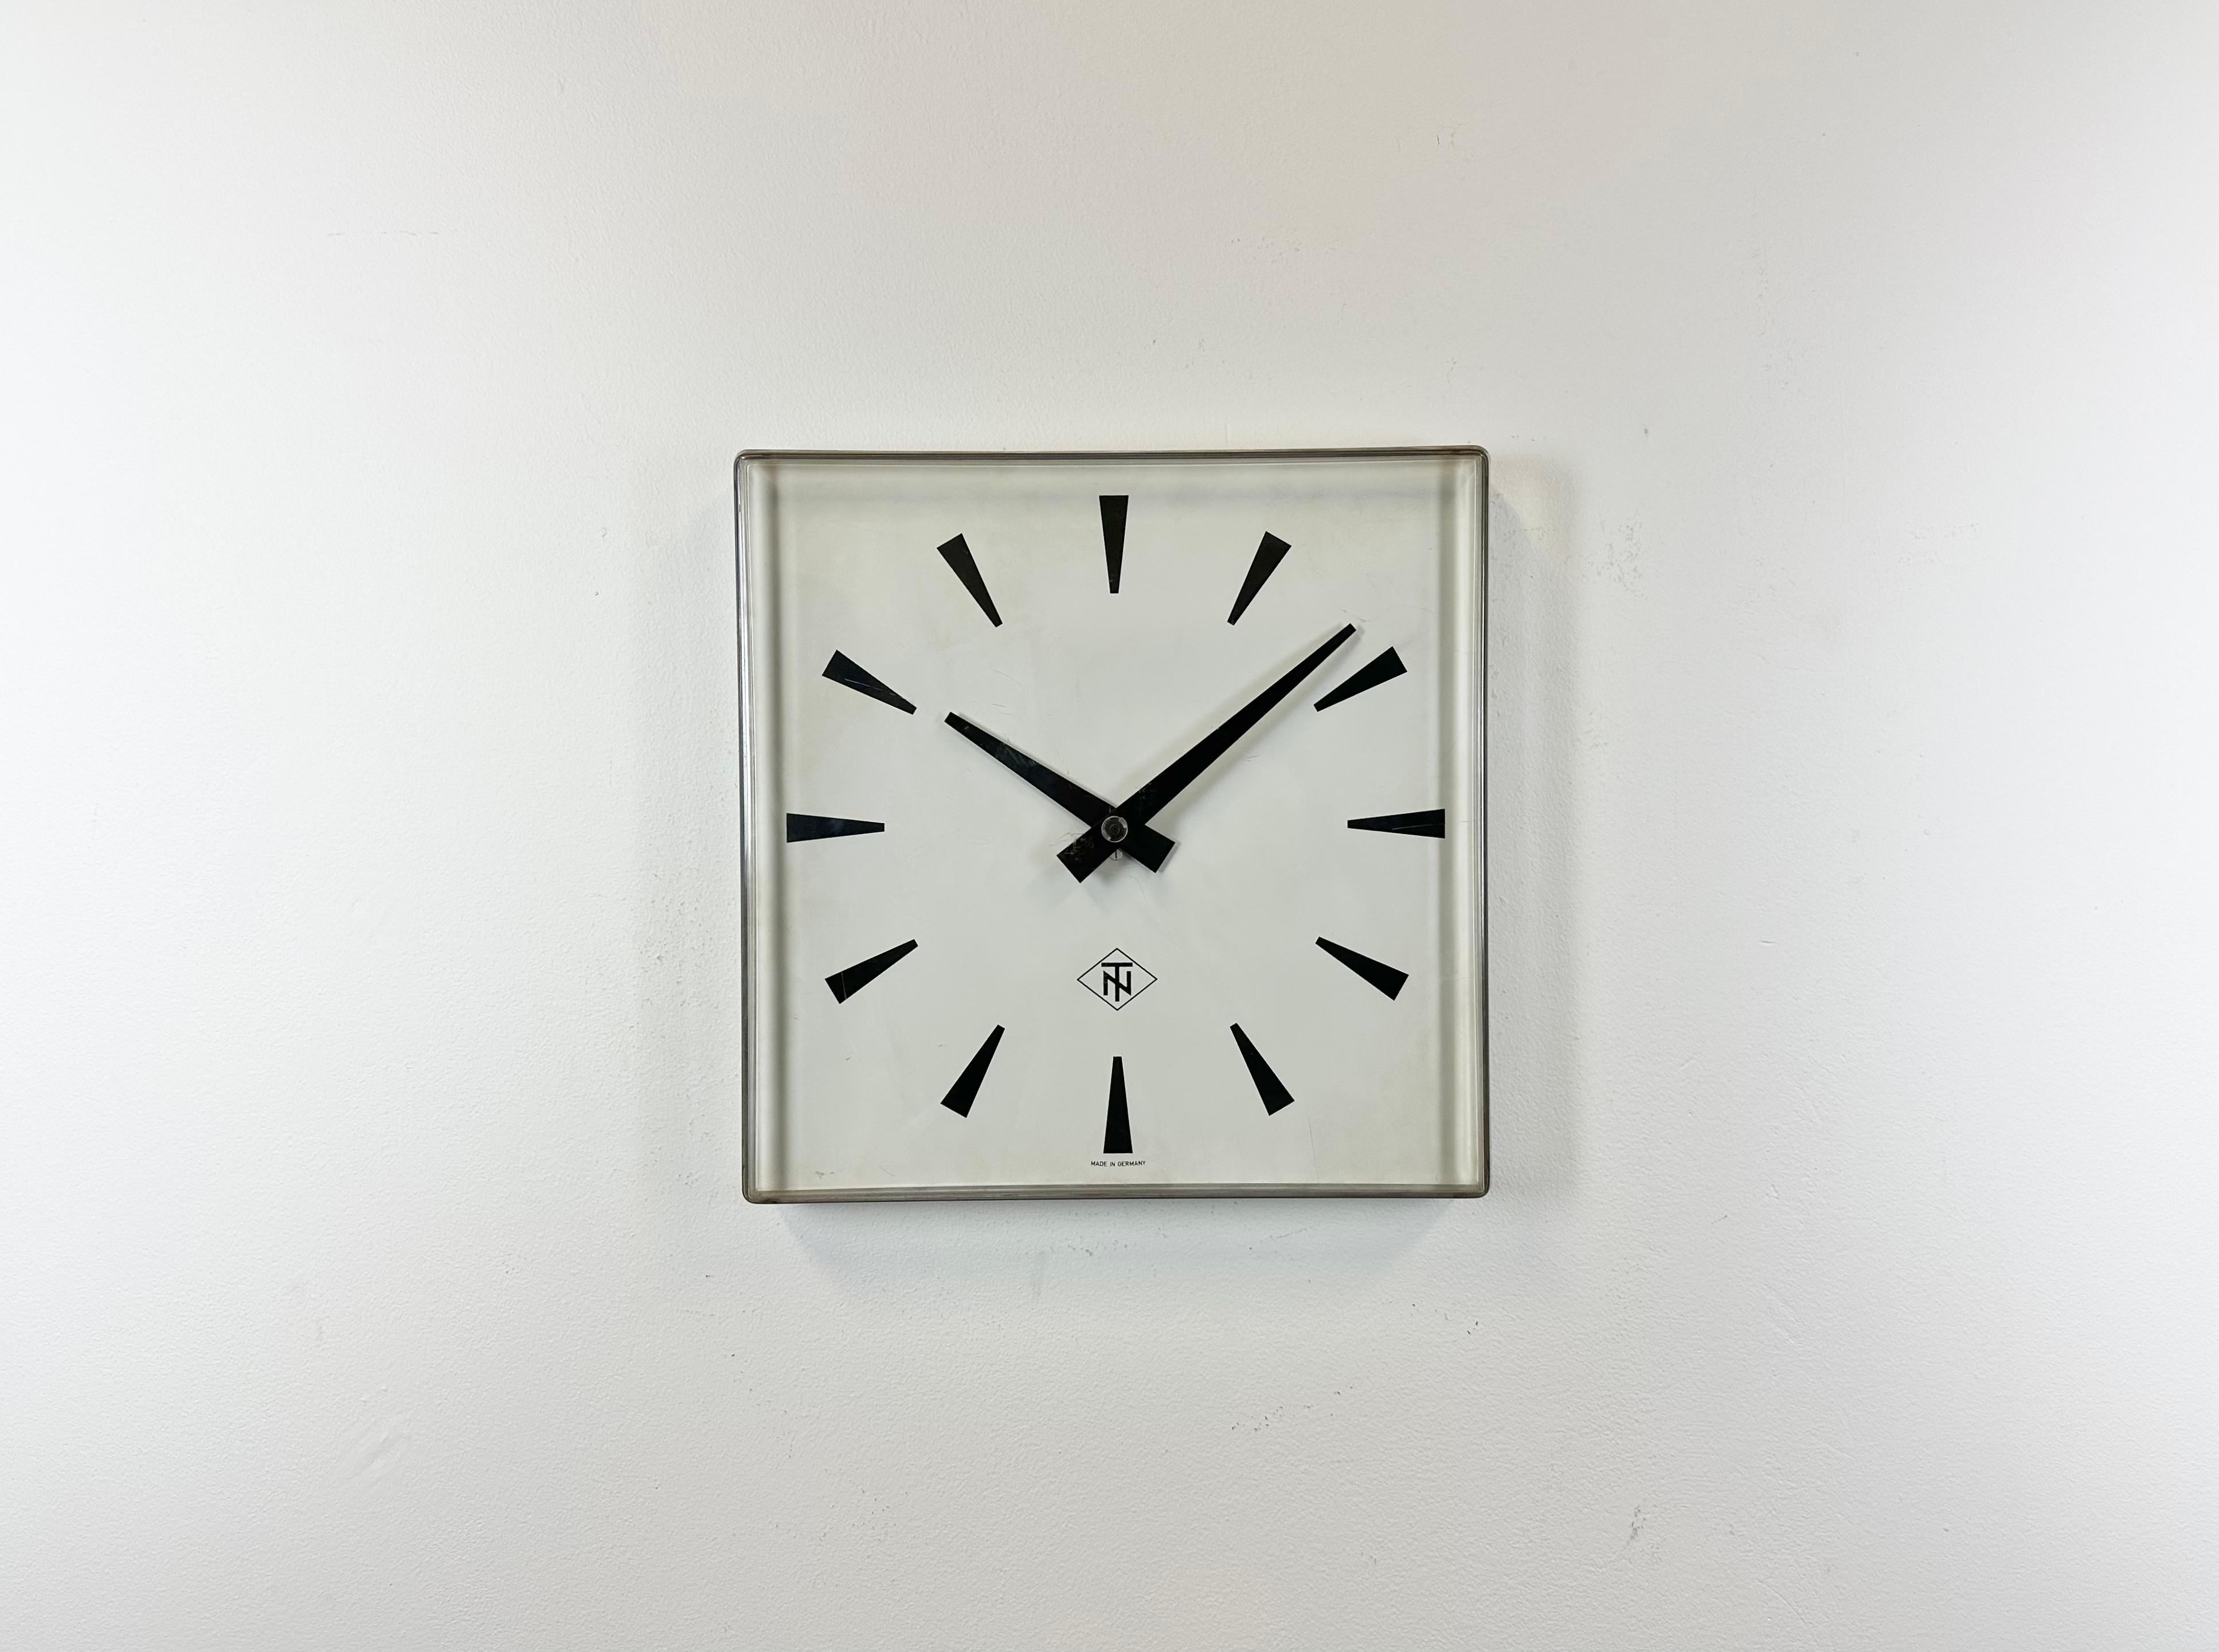 German Industrial Square Plexiglass Station Wall Clock from TN, 1970